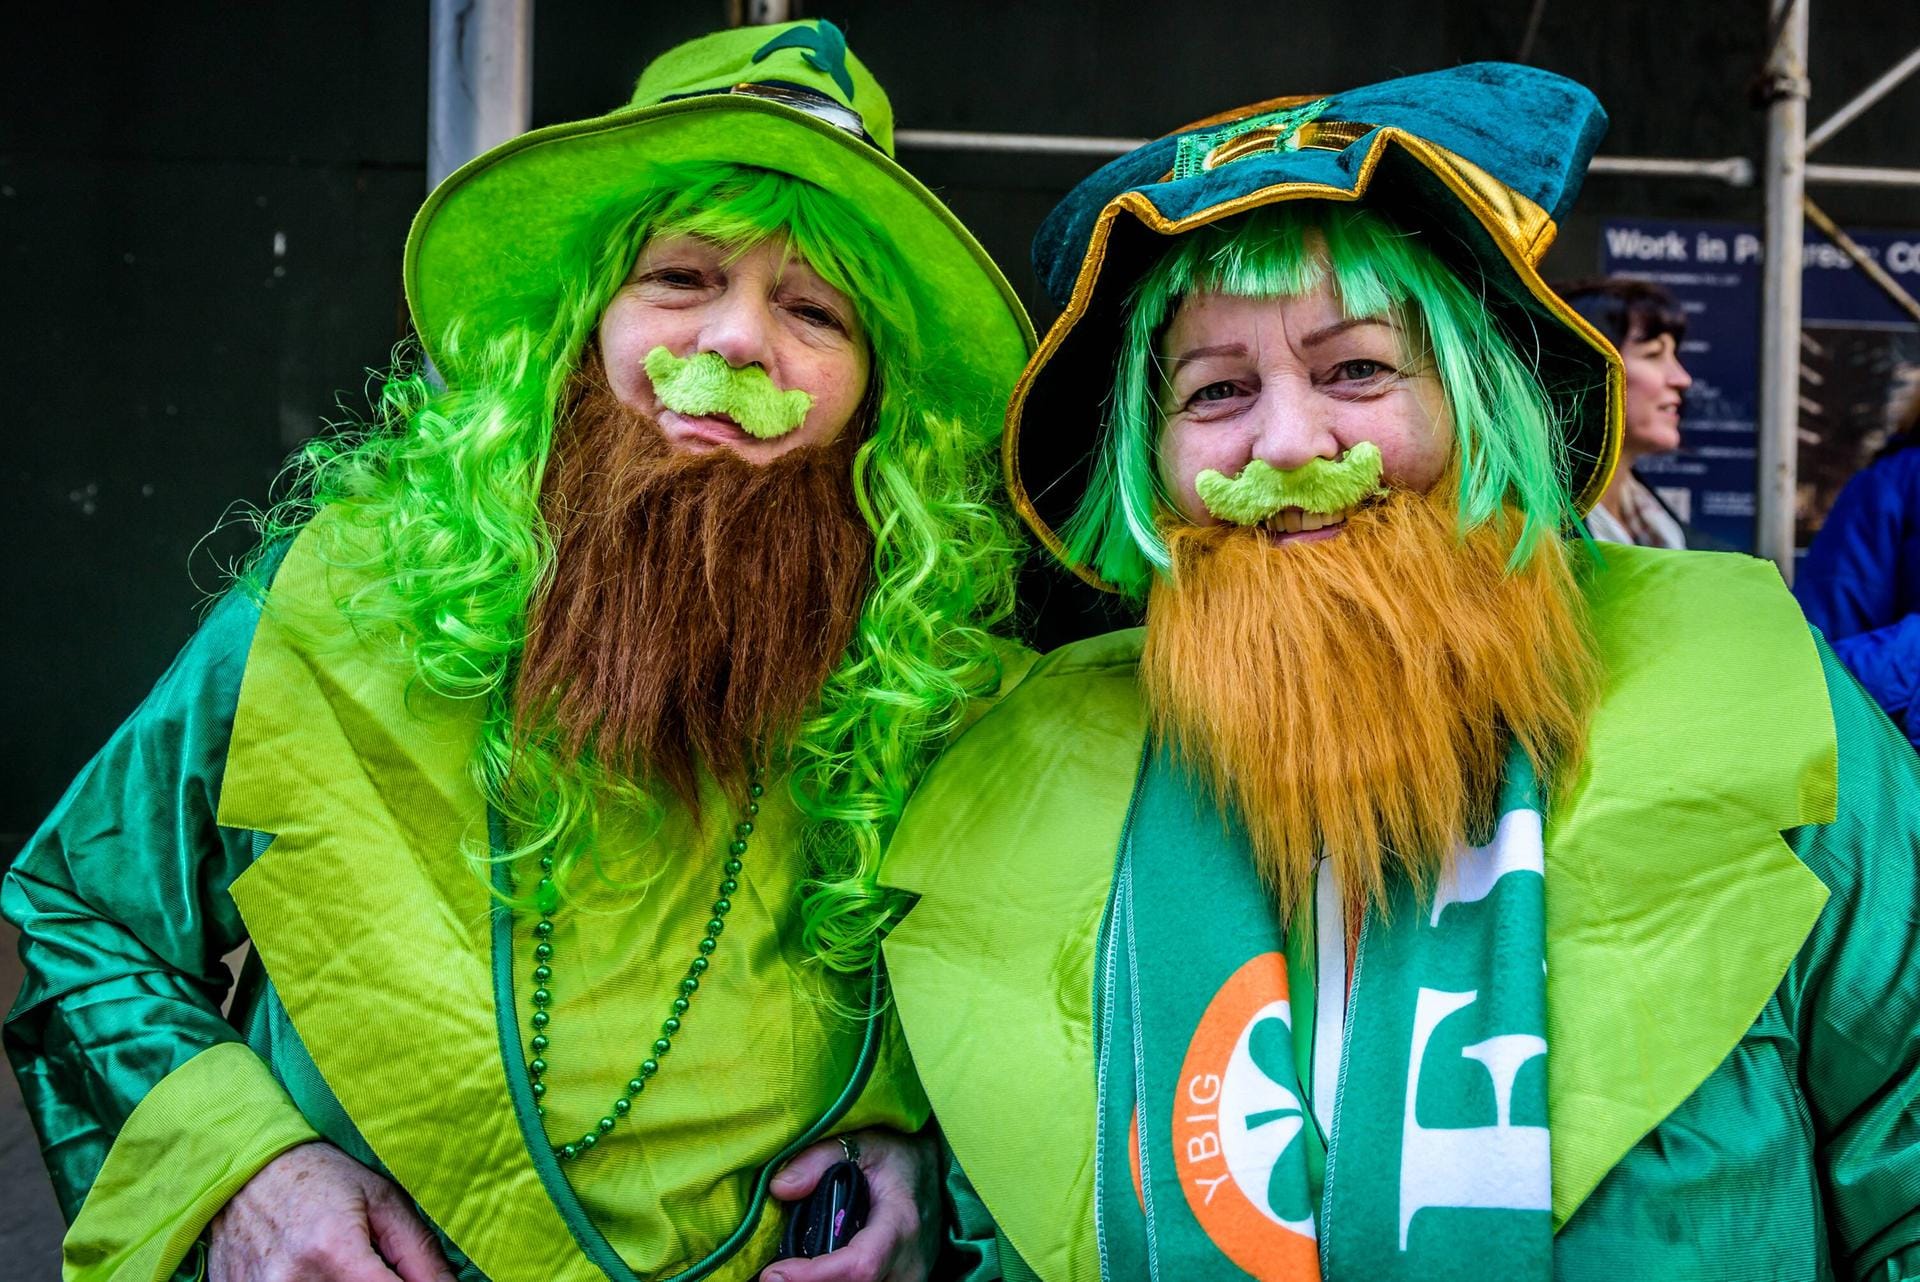 Der Dresscode am St. Patrick's Day ist Grün.